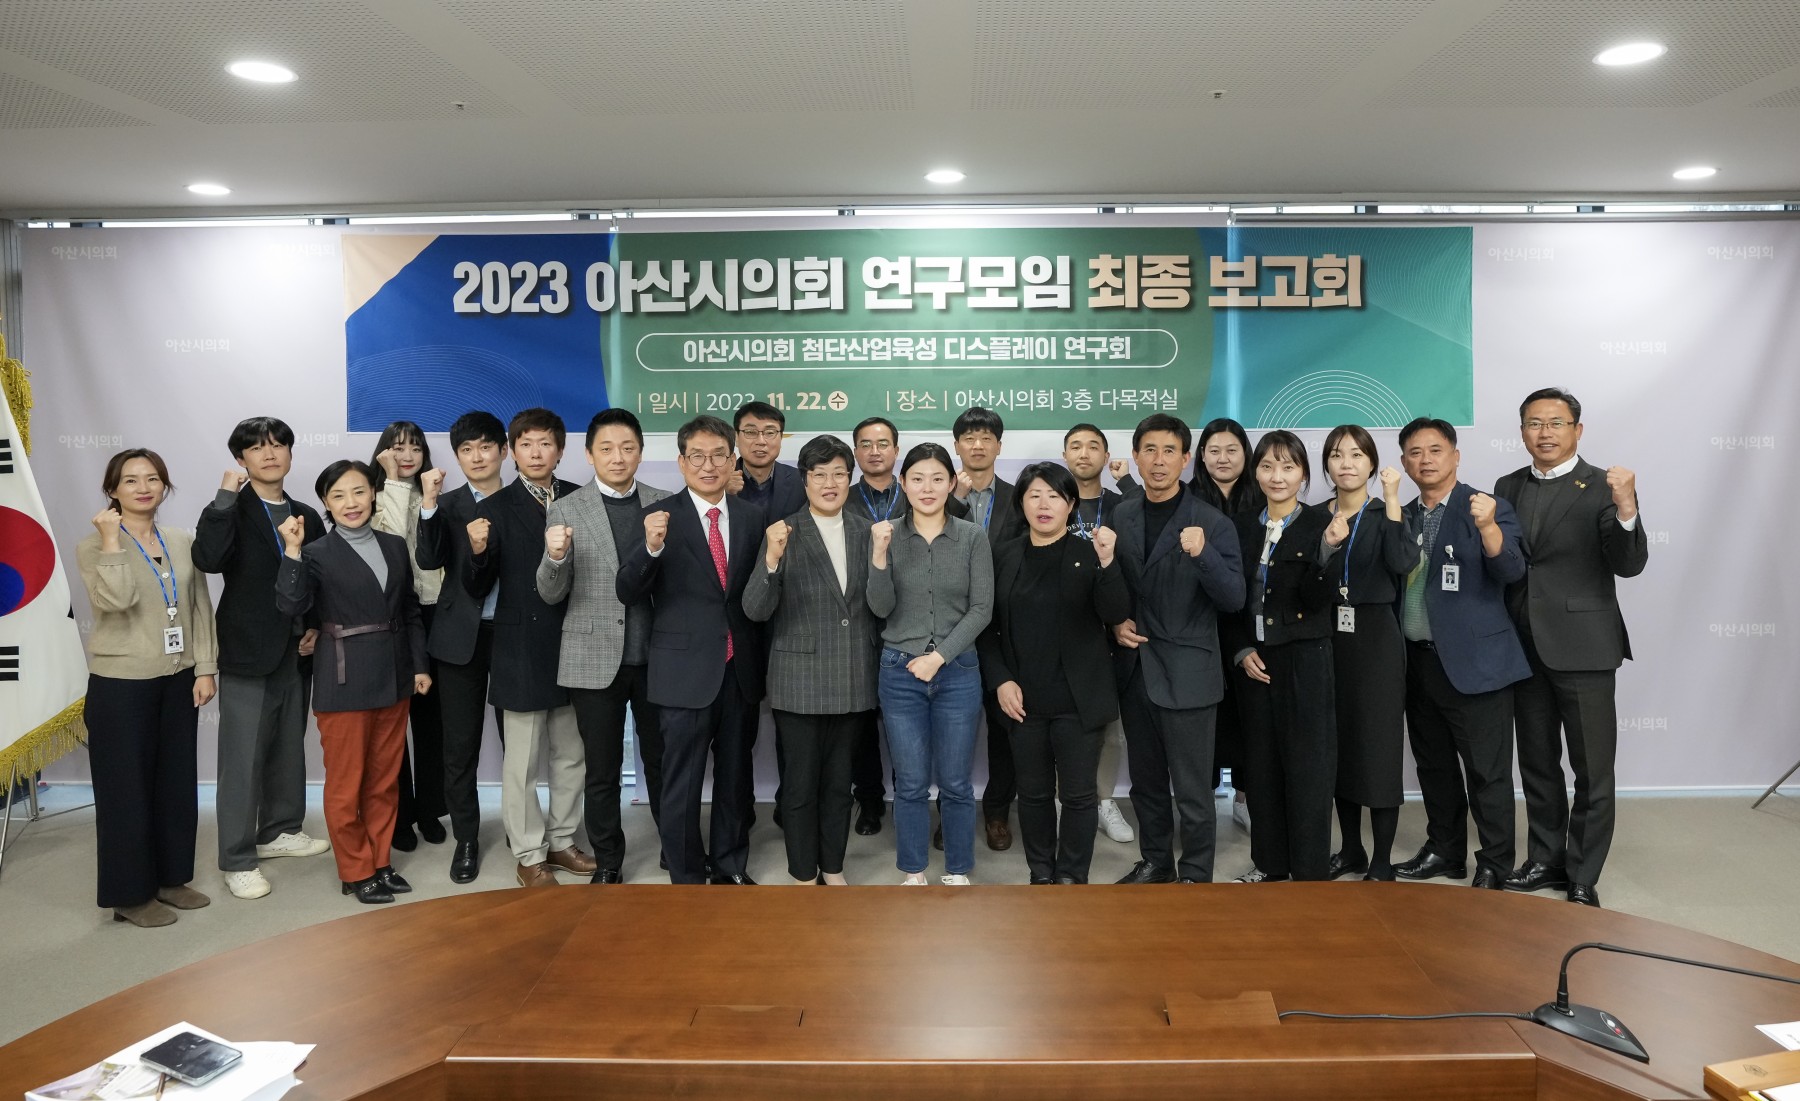 아산시의회 첨단산업육성 연구회, 신성장동력 기반 디스플레이 연구 최종 보고회 개최